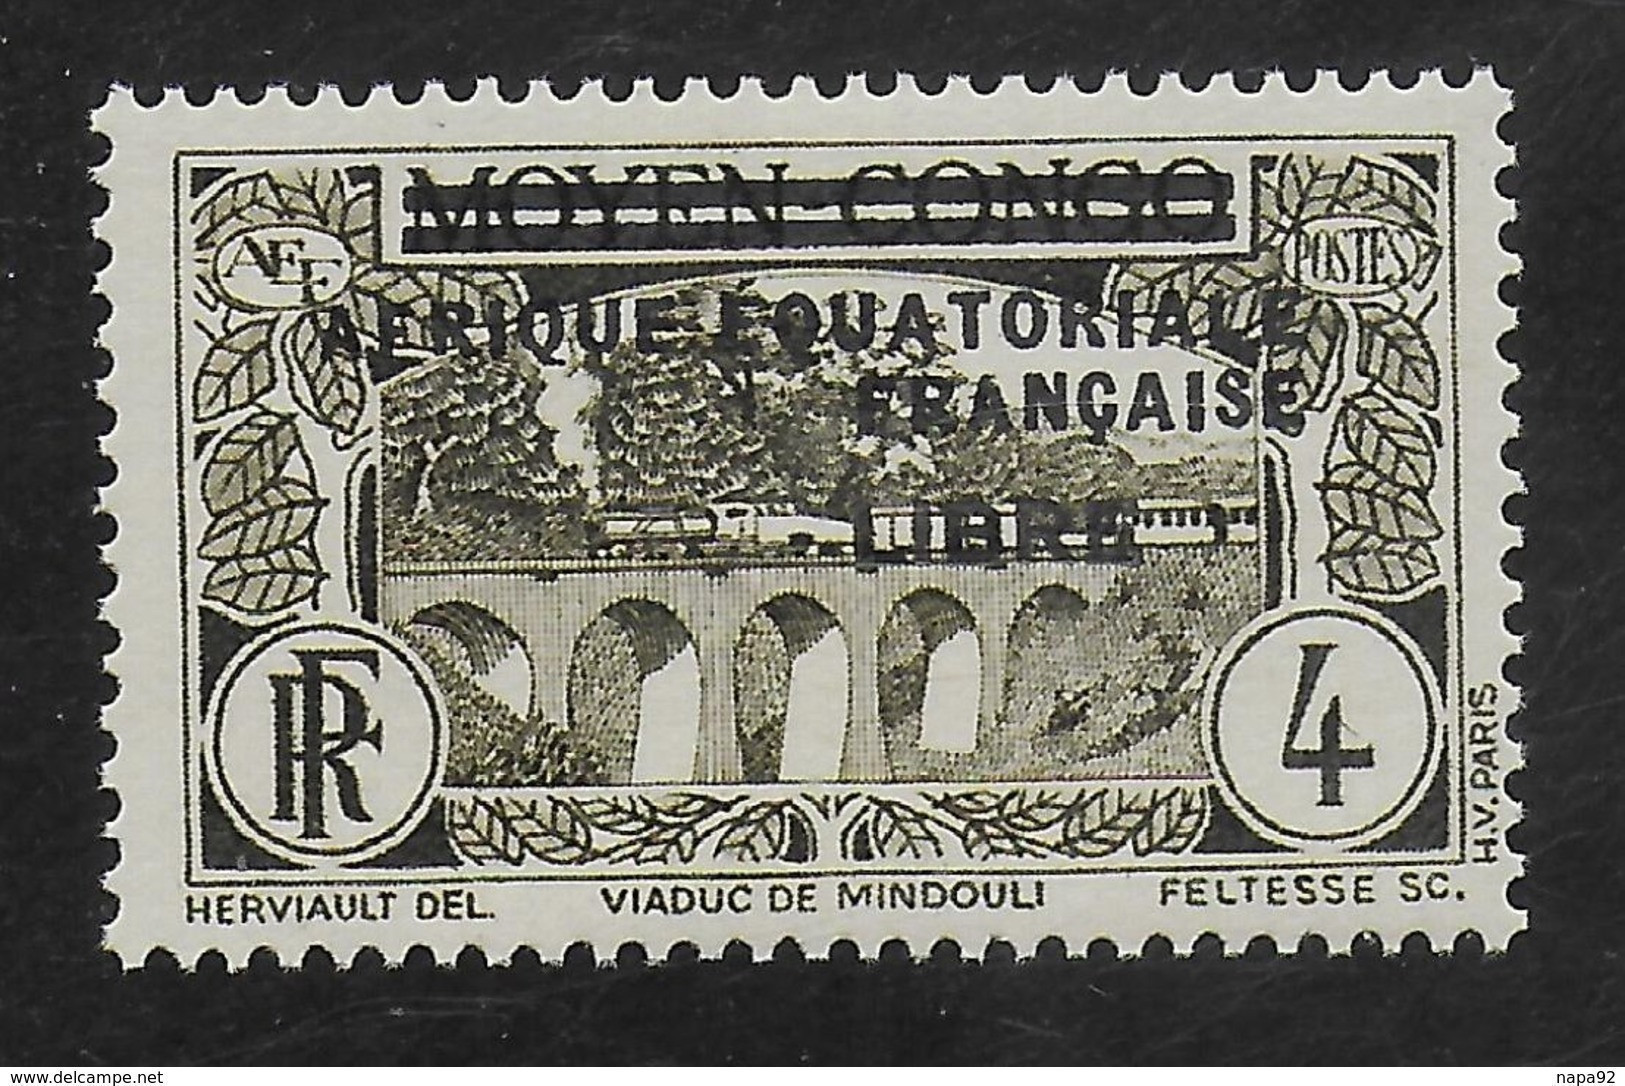 AFRIQUE EQUATORIALE FRANCAISE - AEF - A.E.F. - 1940 - YT 102** - Neufs